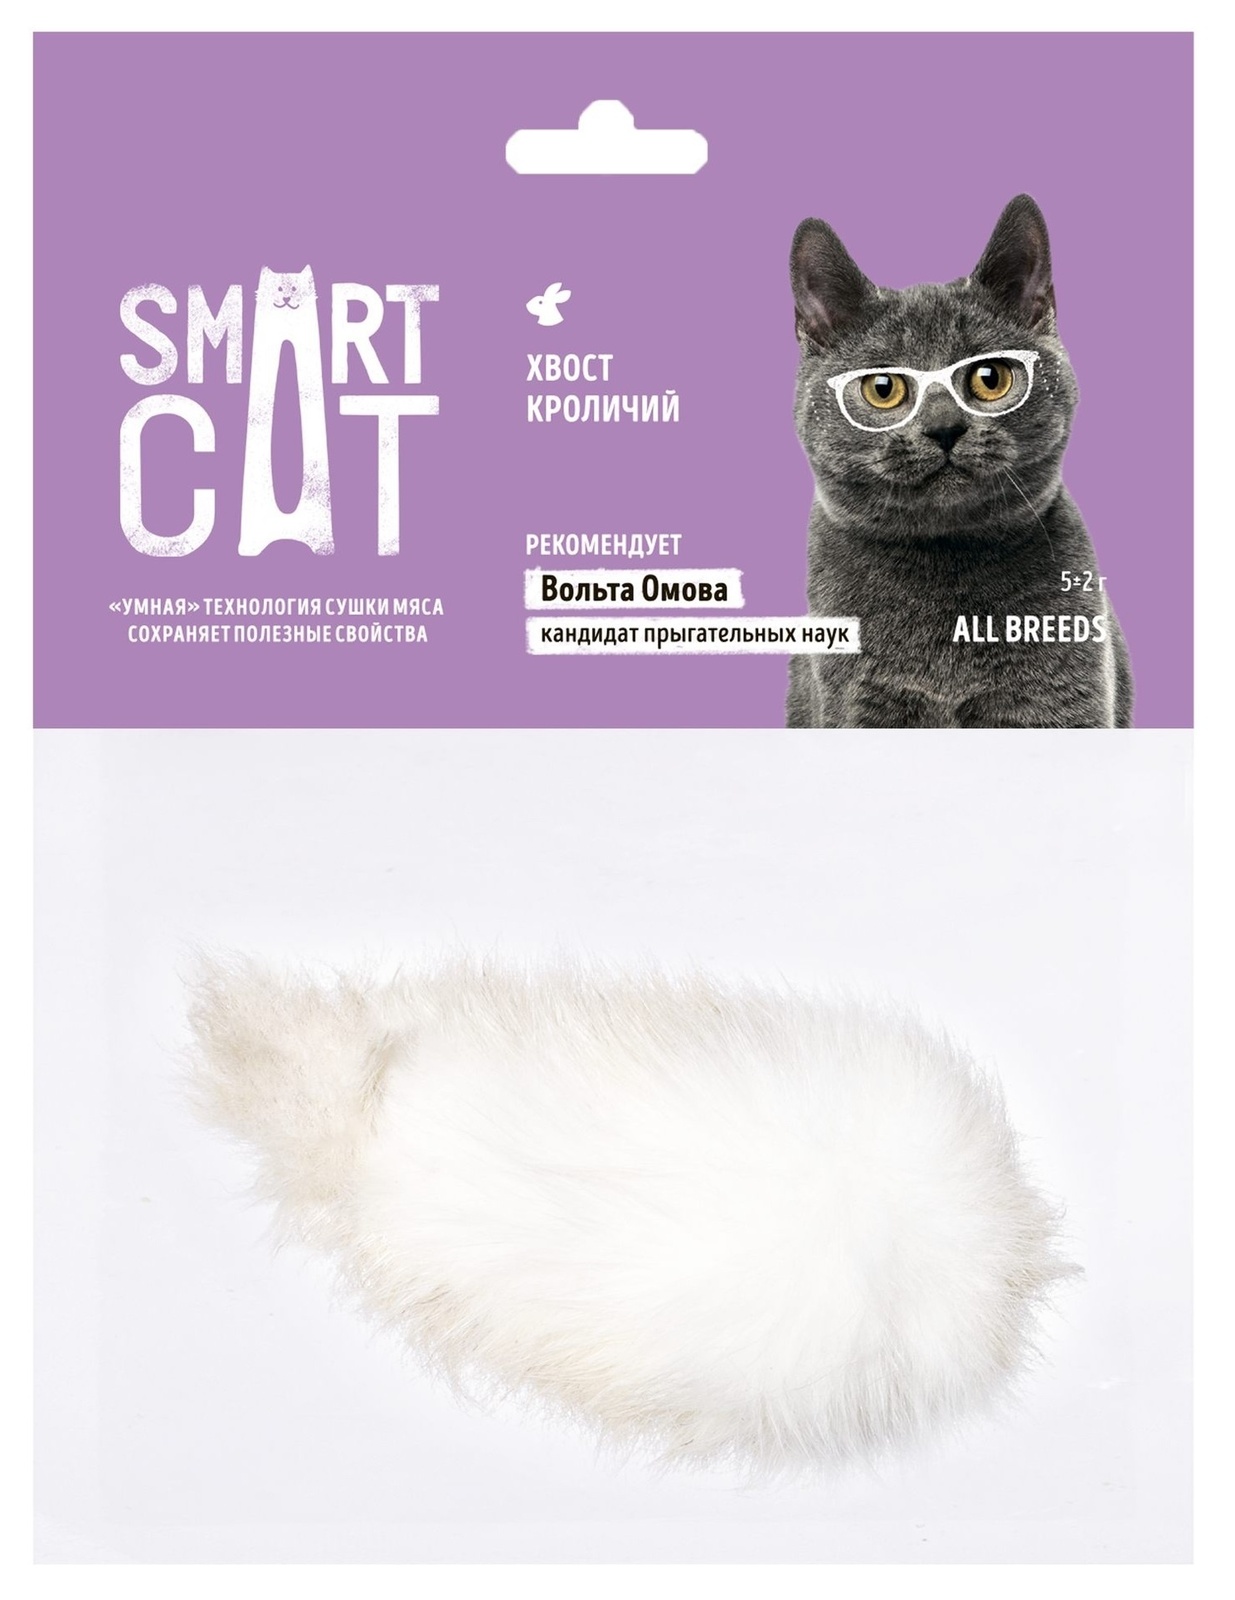 Smart Cat лакомства Smart Cat лакомства хвост кроличий (5 г) smart cat лакомства smart cat лакомства кроличьи уши 15 г